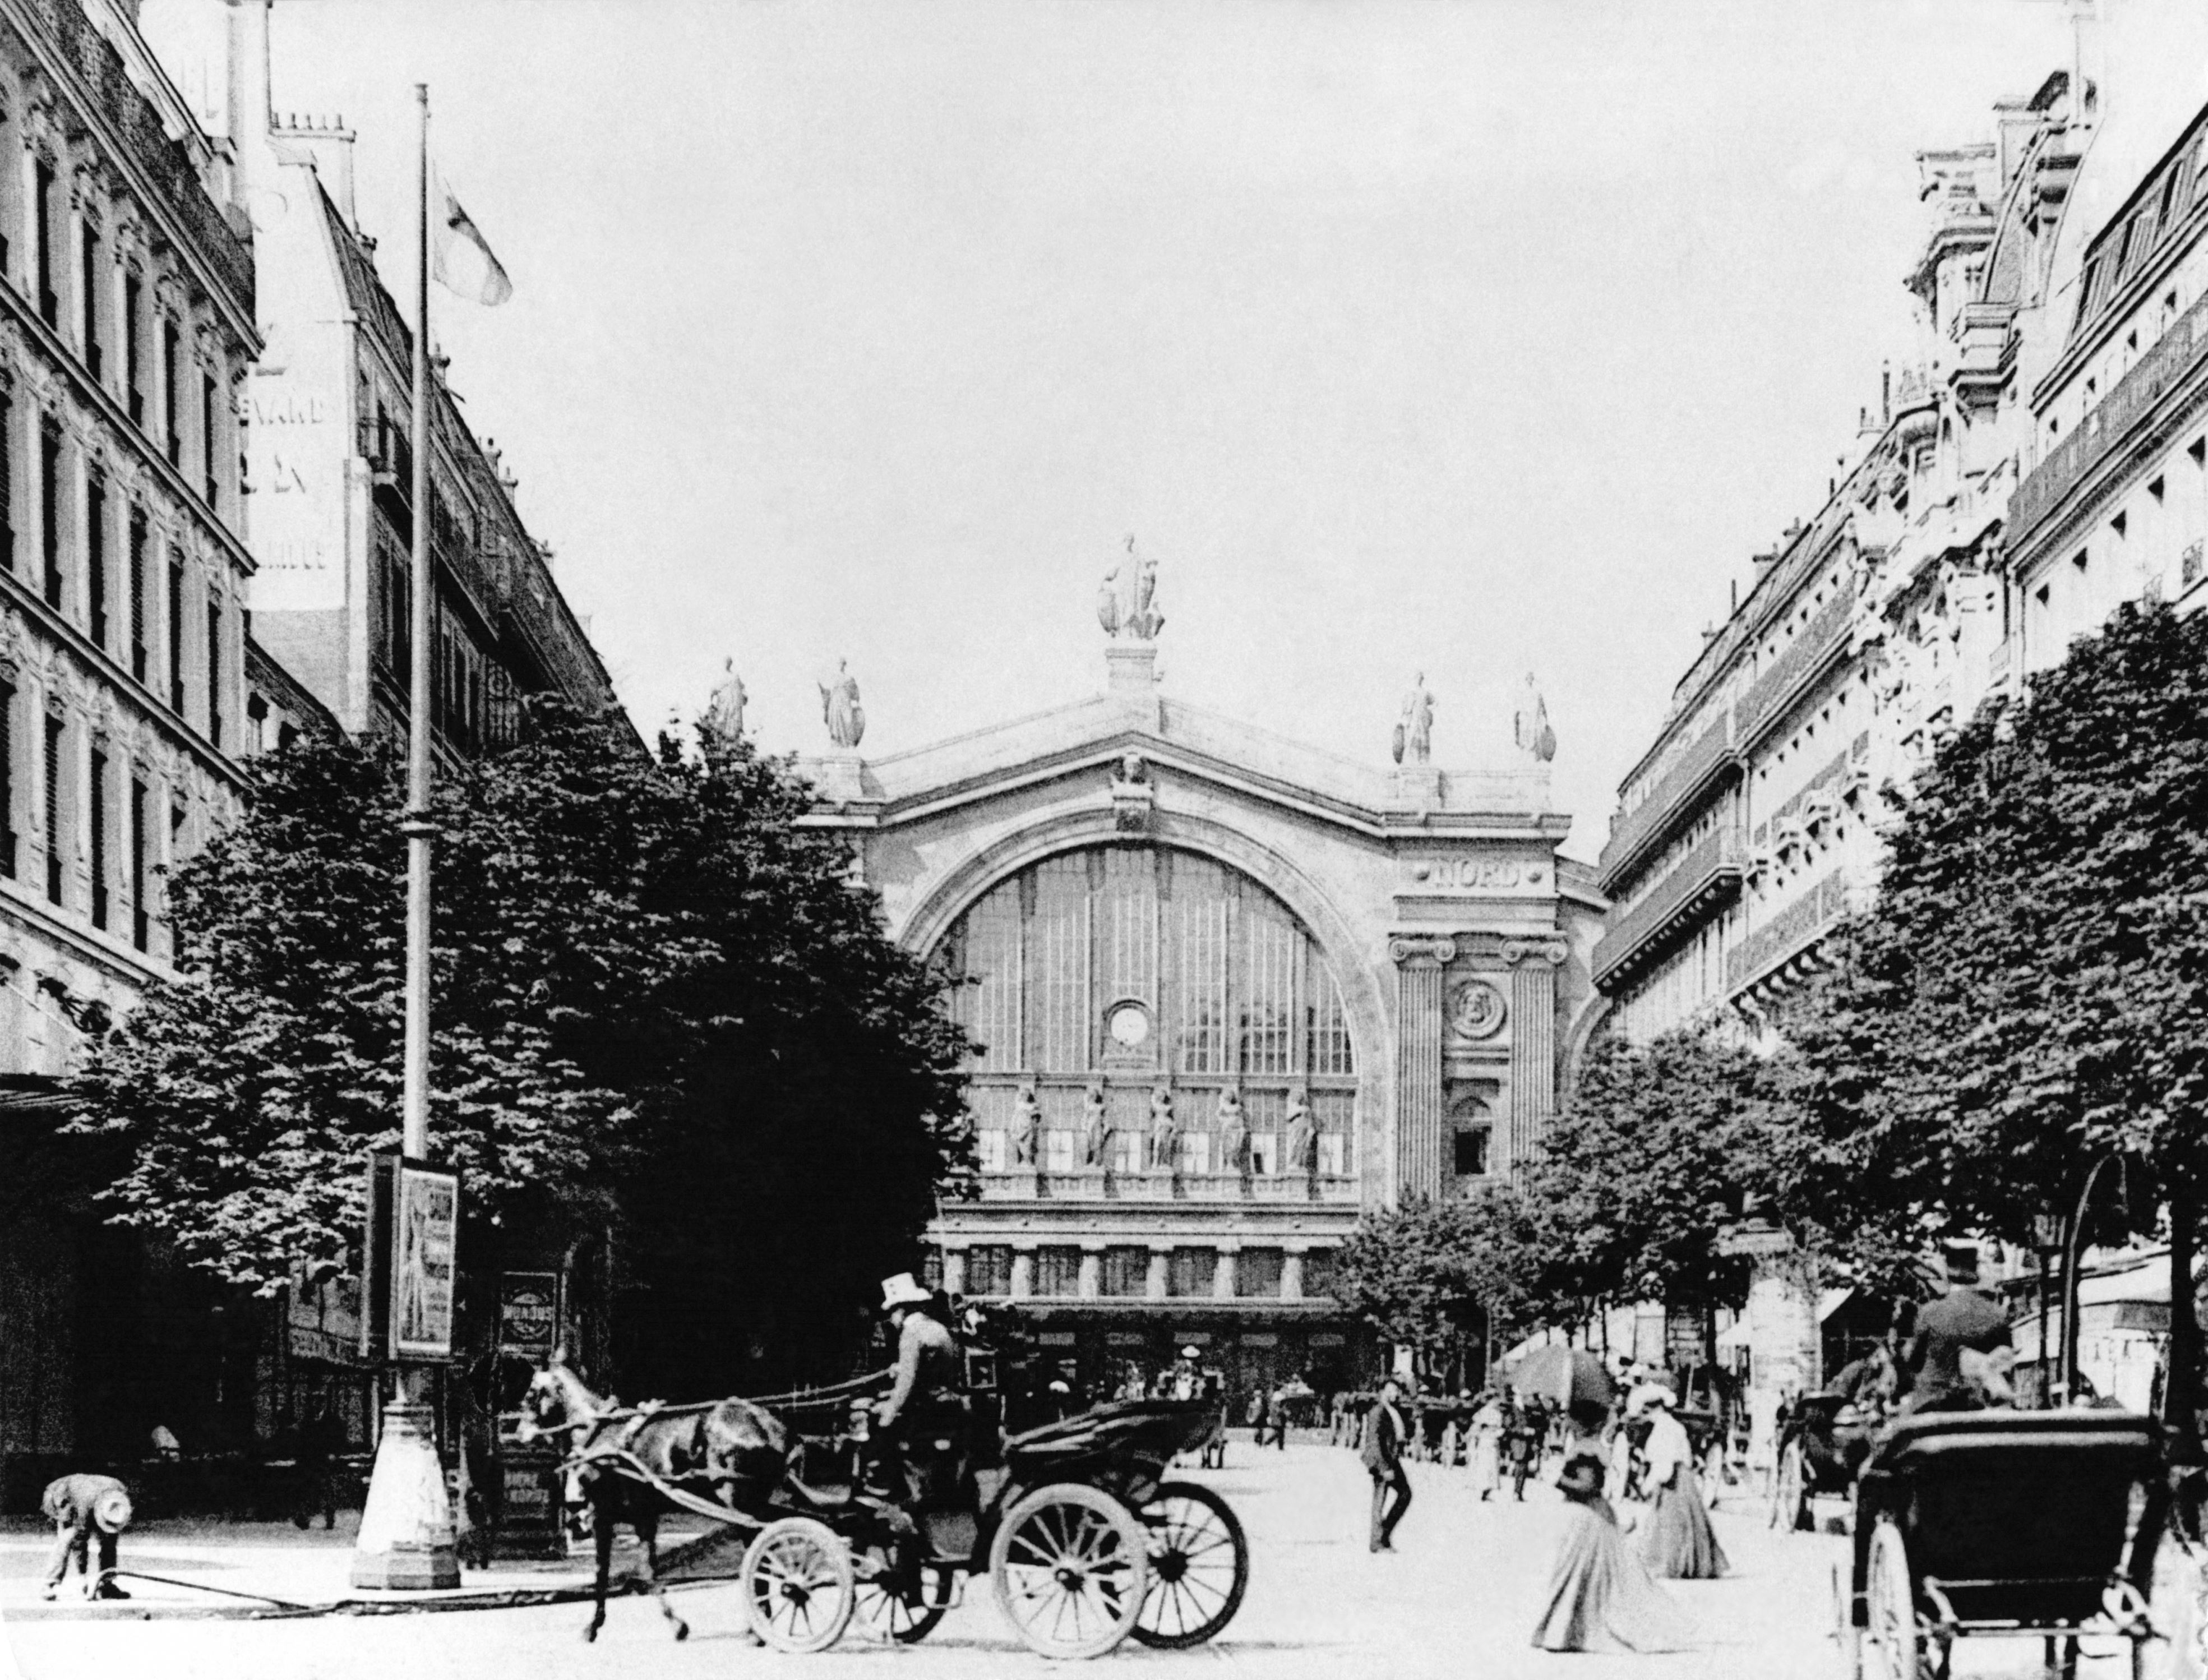 Slide 4 of 29: Vue de la gare du Nord à Paris au XIXè Siècle, France. (Photo by API/Gamma-Rapho via Getty Images)